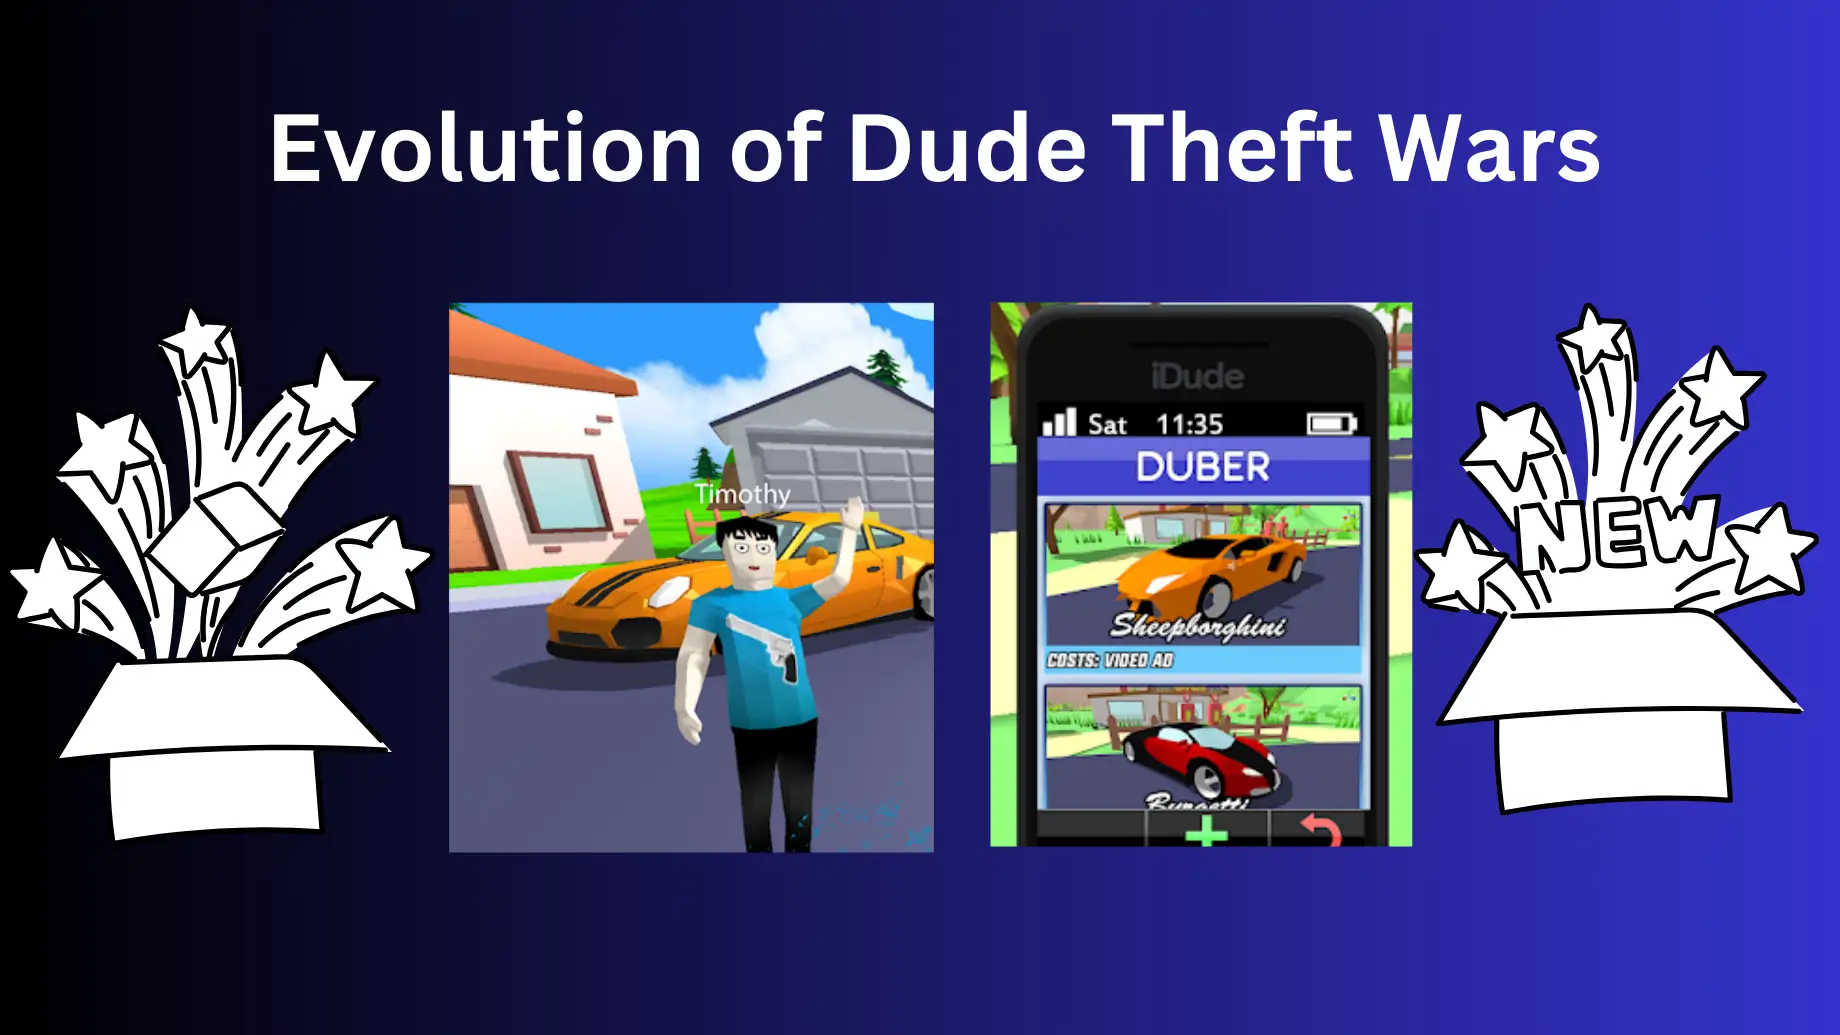 Evolution of Dude Theft Wars